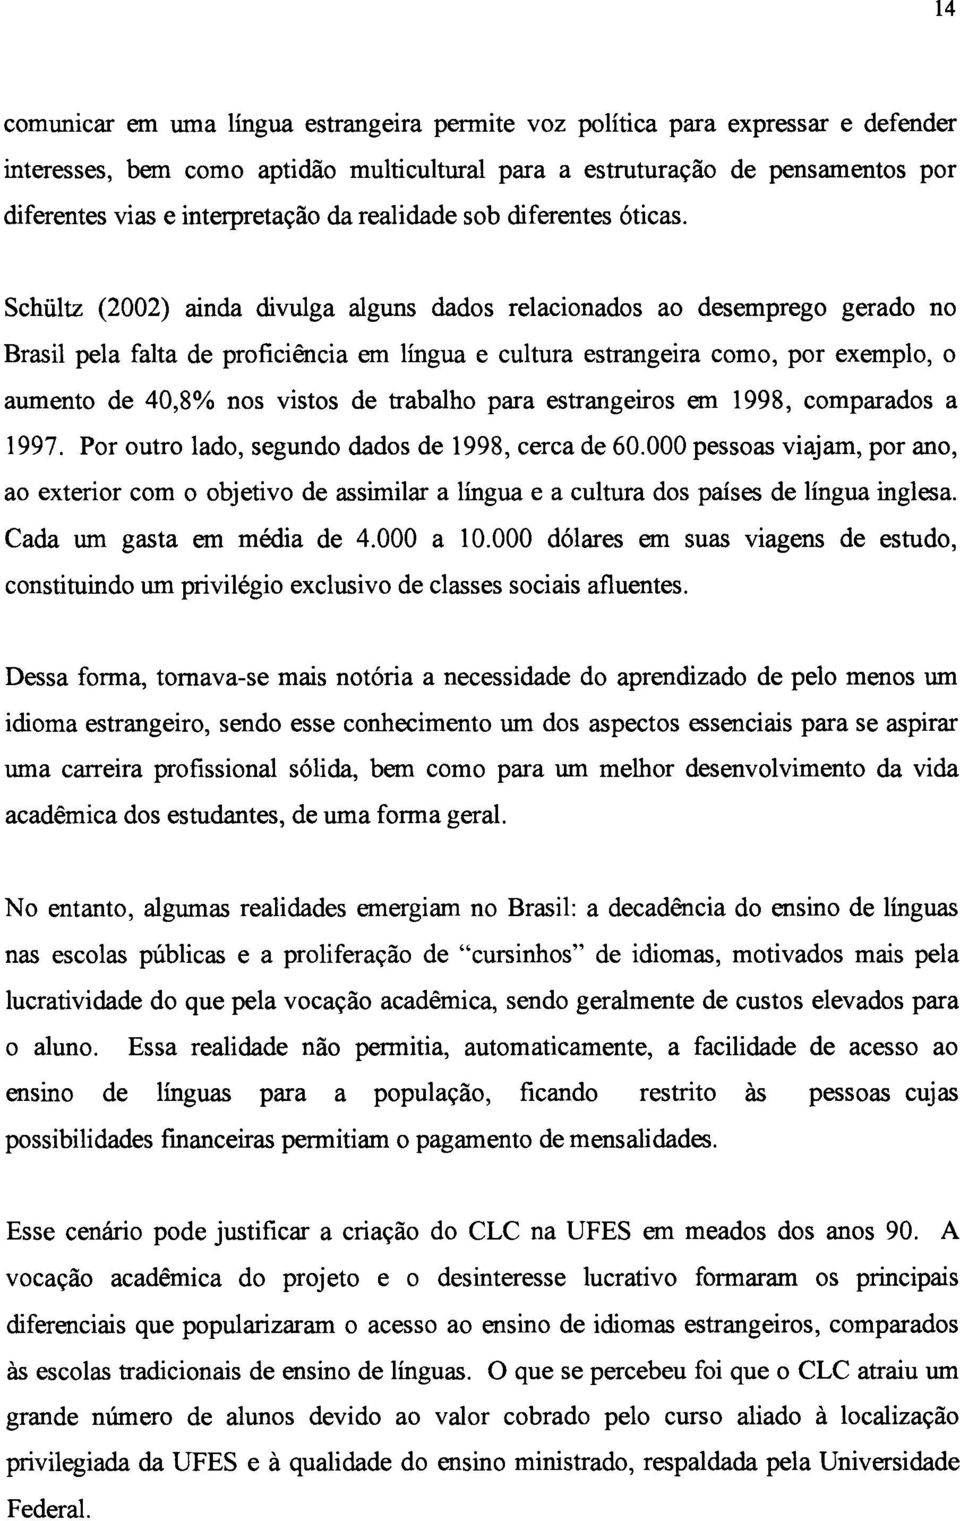 Schültz (2002) ainda divulga alguns dados relacionados ao desemprego gerado no Brasil pela falta de proficiência em língua e cultura estrangeira como, por exemplo, o aumento de 40,8% nos vistos de